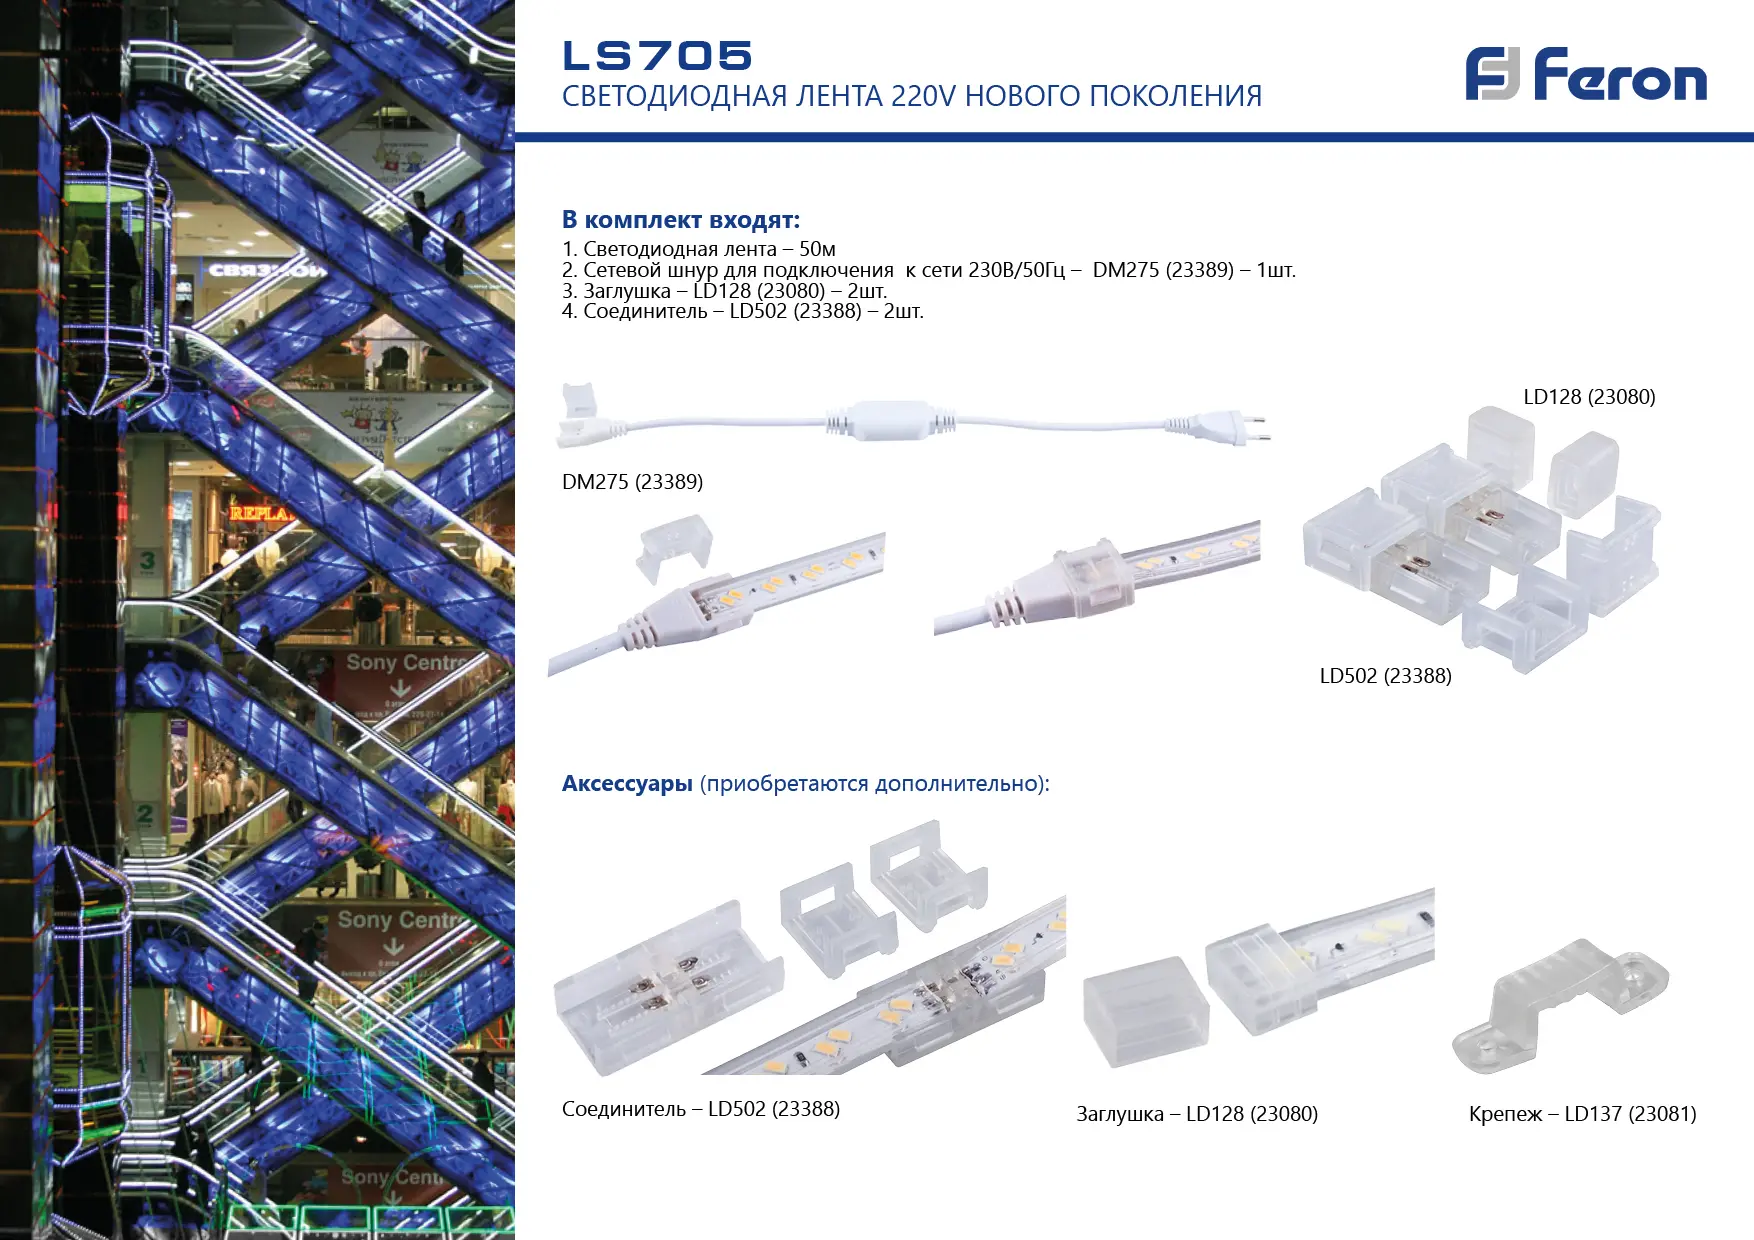 Крепеж для светодиодной ленты LS704/LS707 LS705 Feron 23081 LD137